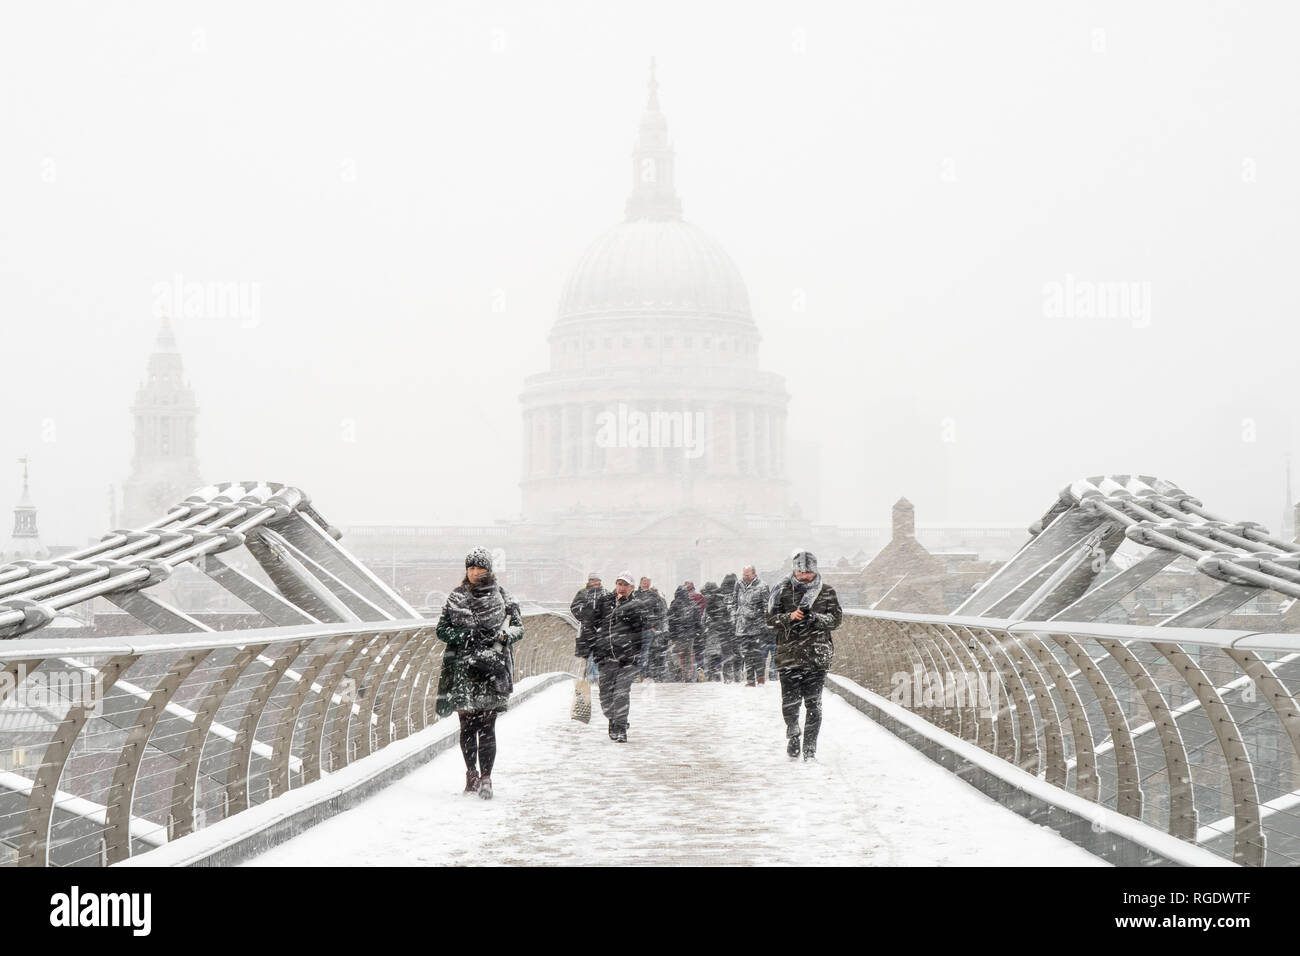 Londres, Reino Unido - 1 de marzo de 2018: San Pablo y el Puente del Milenio visto desde el puente en medio de una tormenta de nieve durante un golpe de frío repentino. Foto de stock